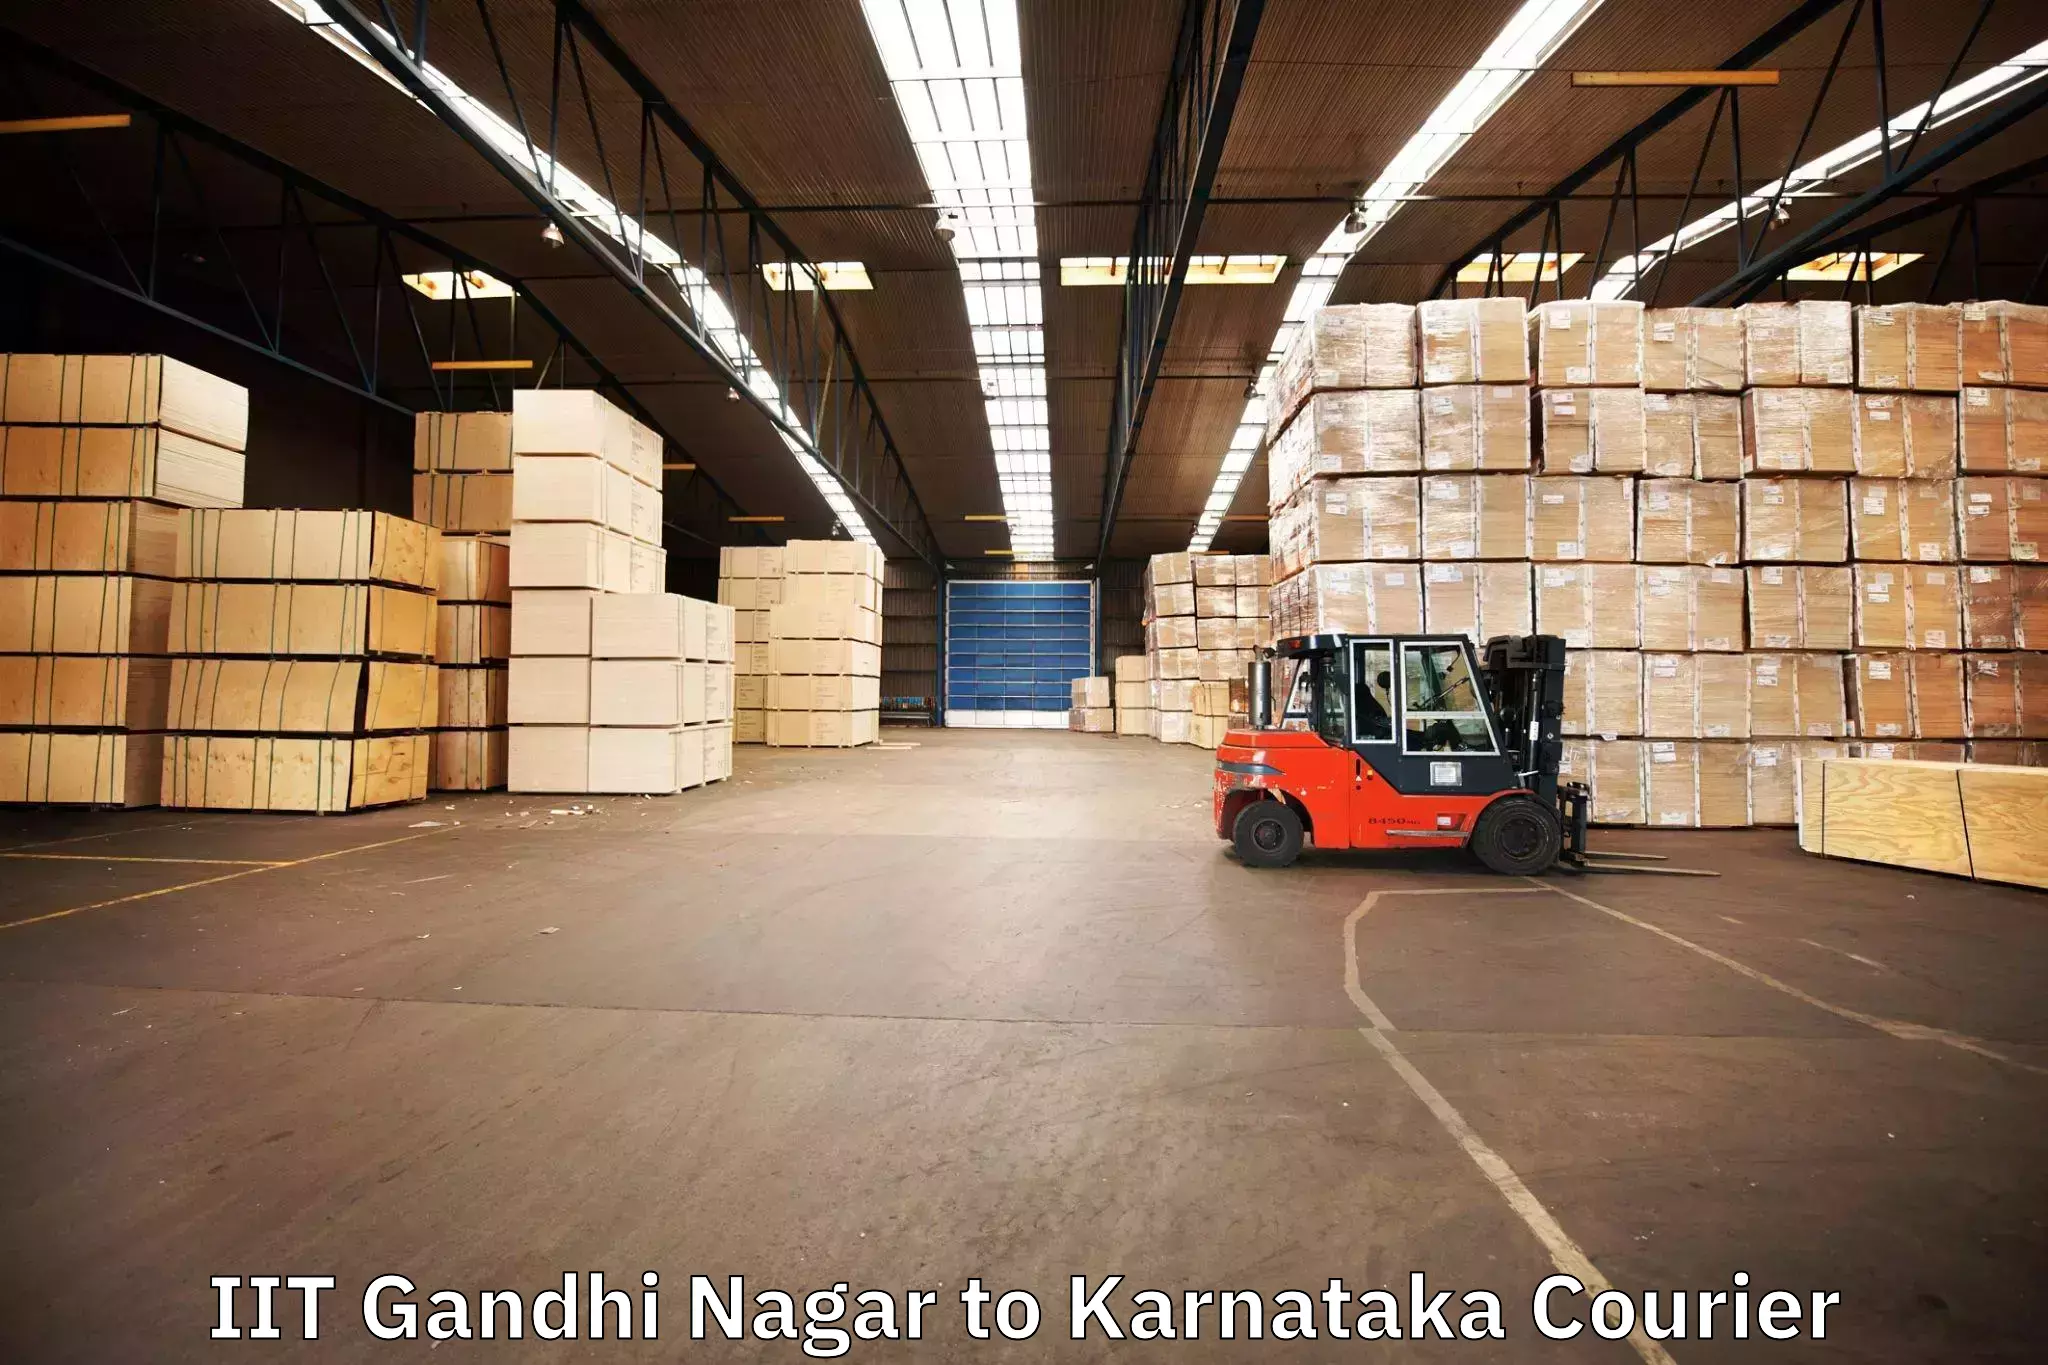 Moving and storage services IIT Gandhi Nagar to Karnataka